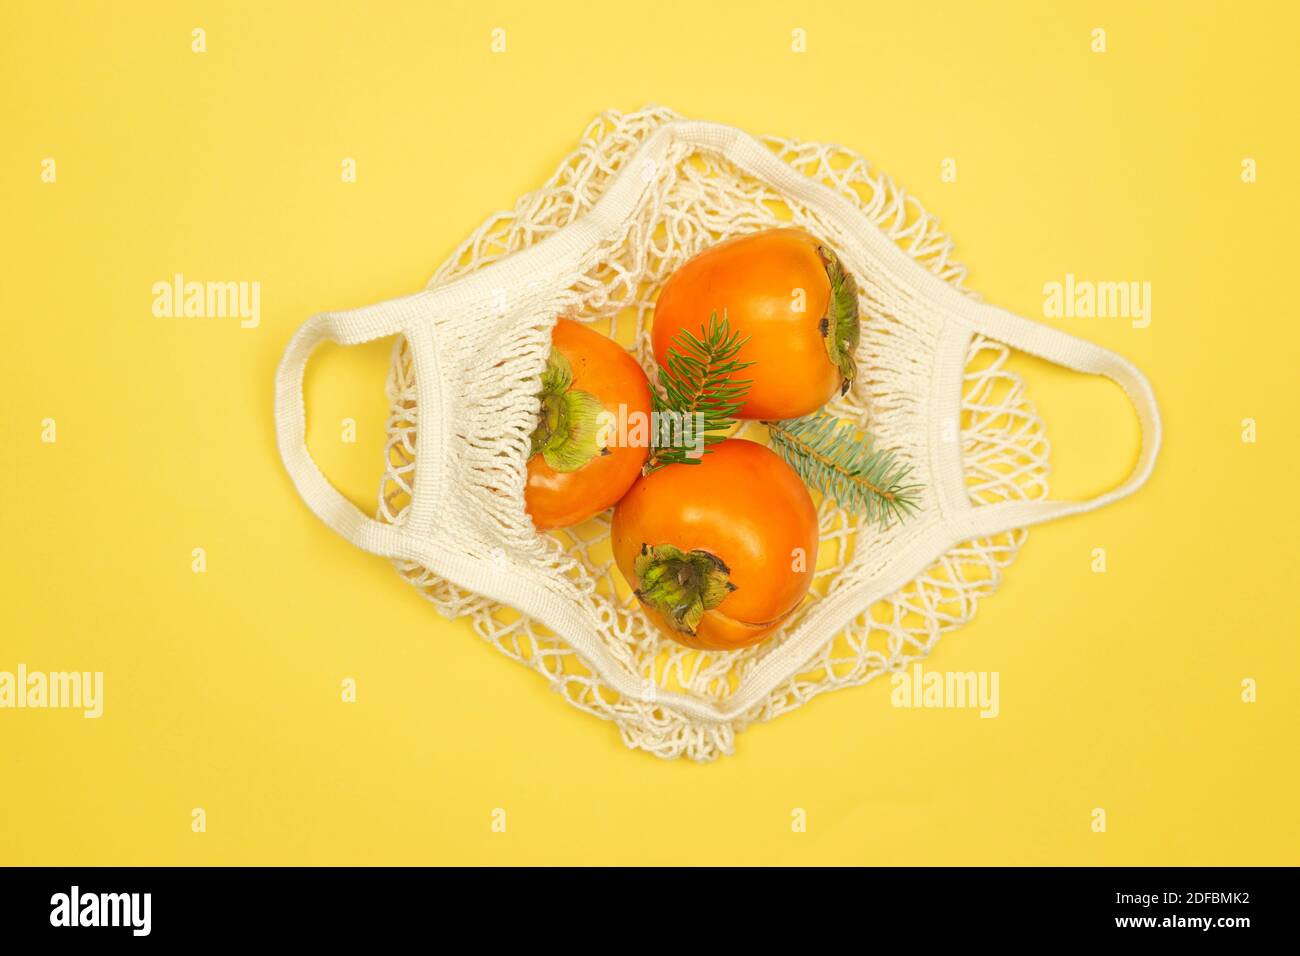 Les fruits persimmon se trouvent dans le sac de filet blanc sur fond jaune. Concept d'alimentation saine Banque D'Images